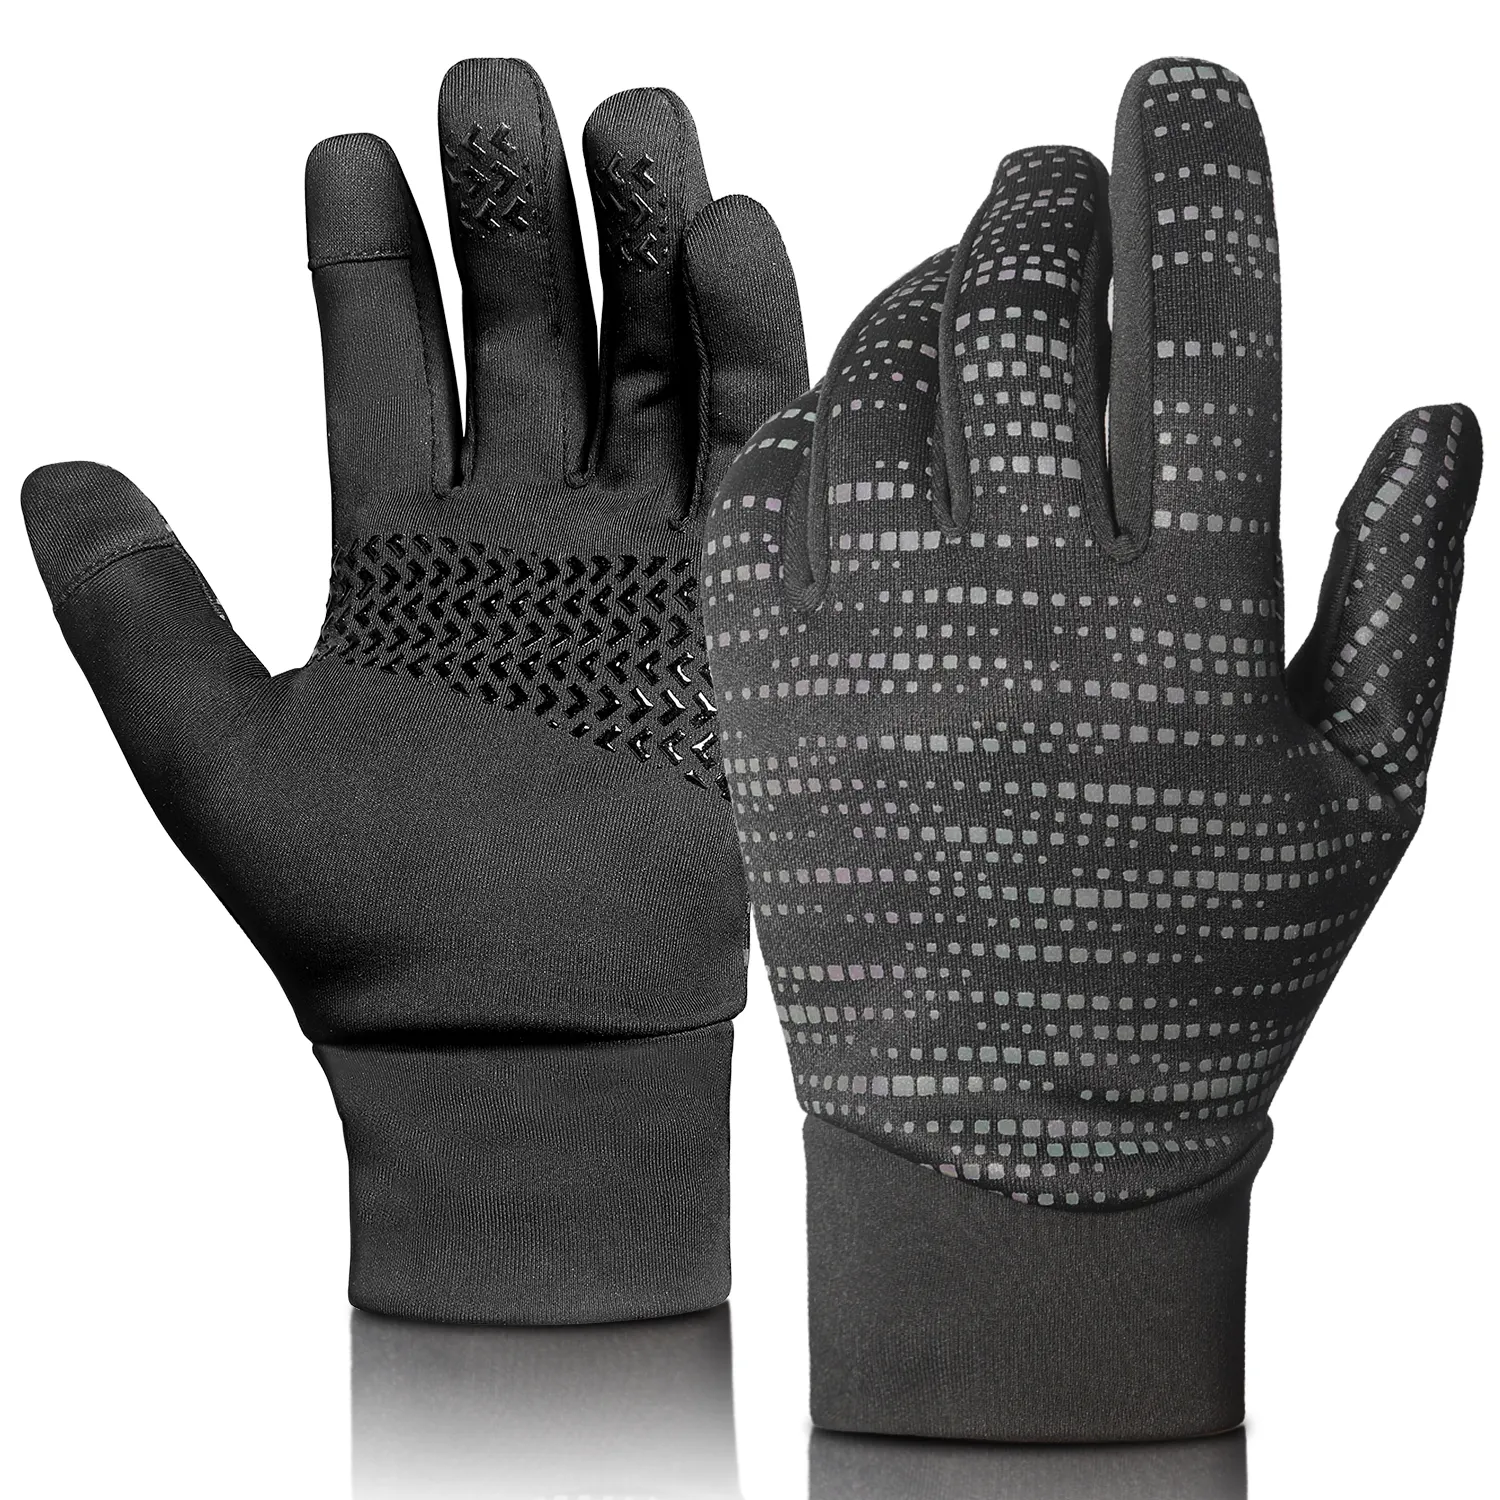 Sarung tangan silikon Anti selip, sarung tangan silikon telapak tangan hangat lembut cocok untuk semua sarung tangan olahraga